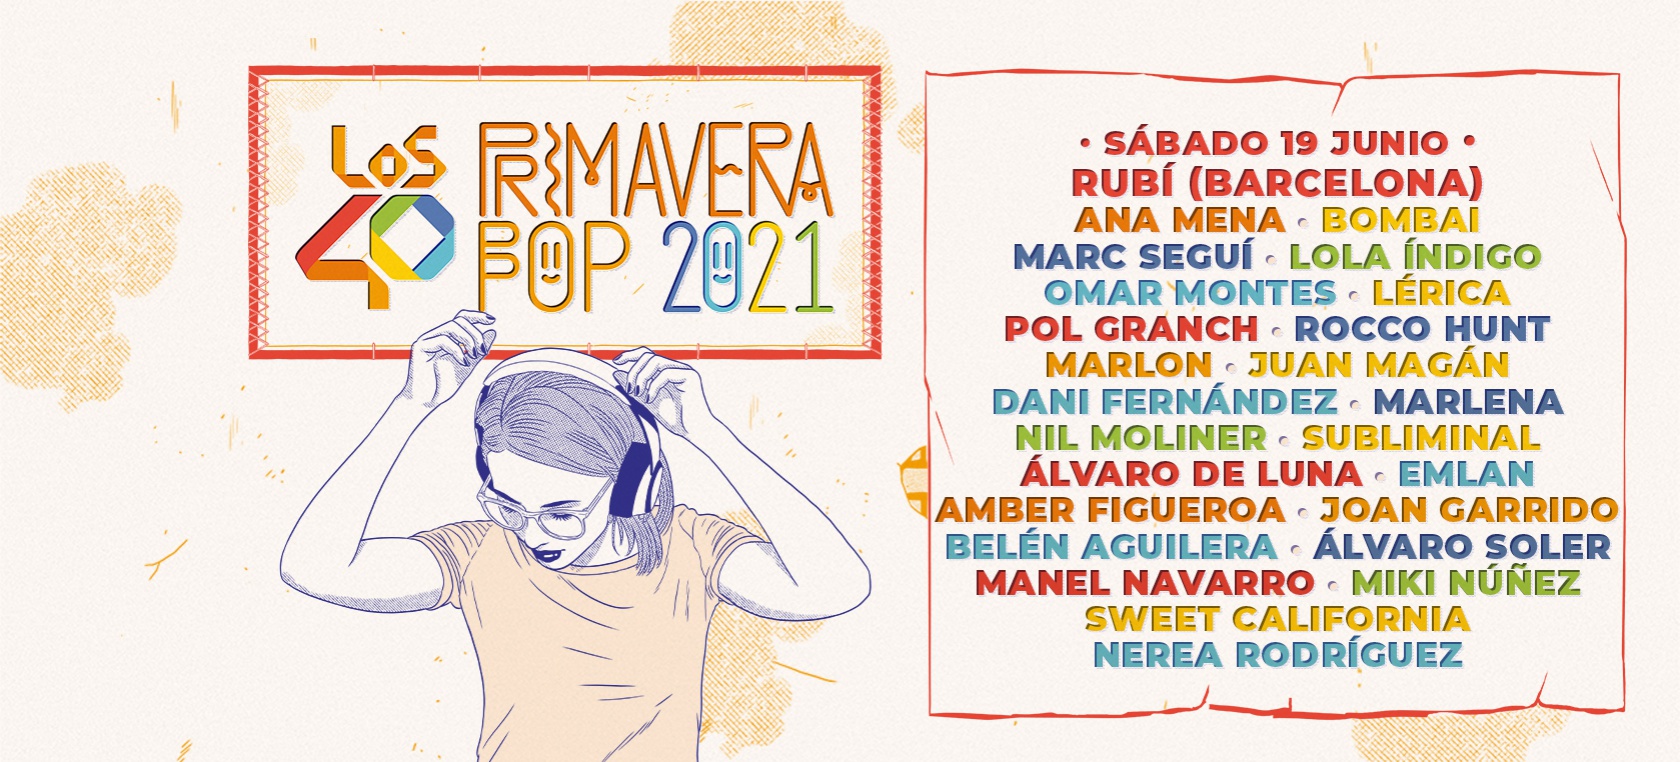 LOS40 Primavera Pop 2021 llega también a Rubí (Barcelona) con artistas como Lola Índigo, Juan Magán o Ana Mena